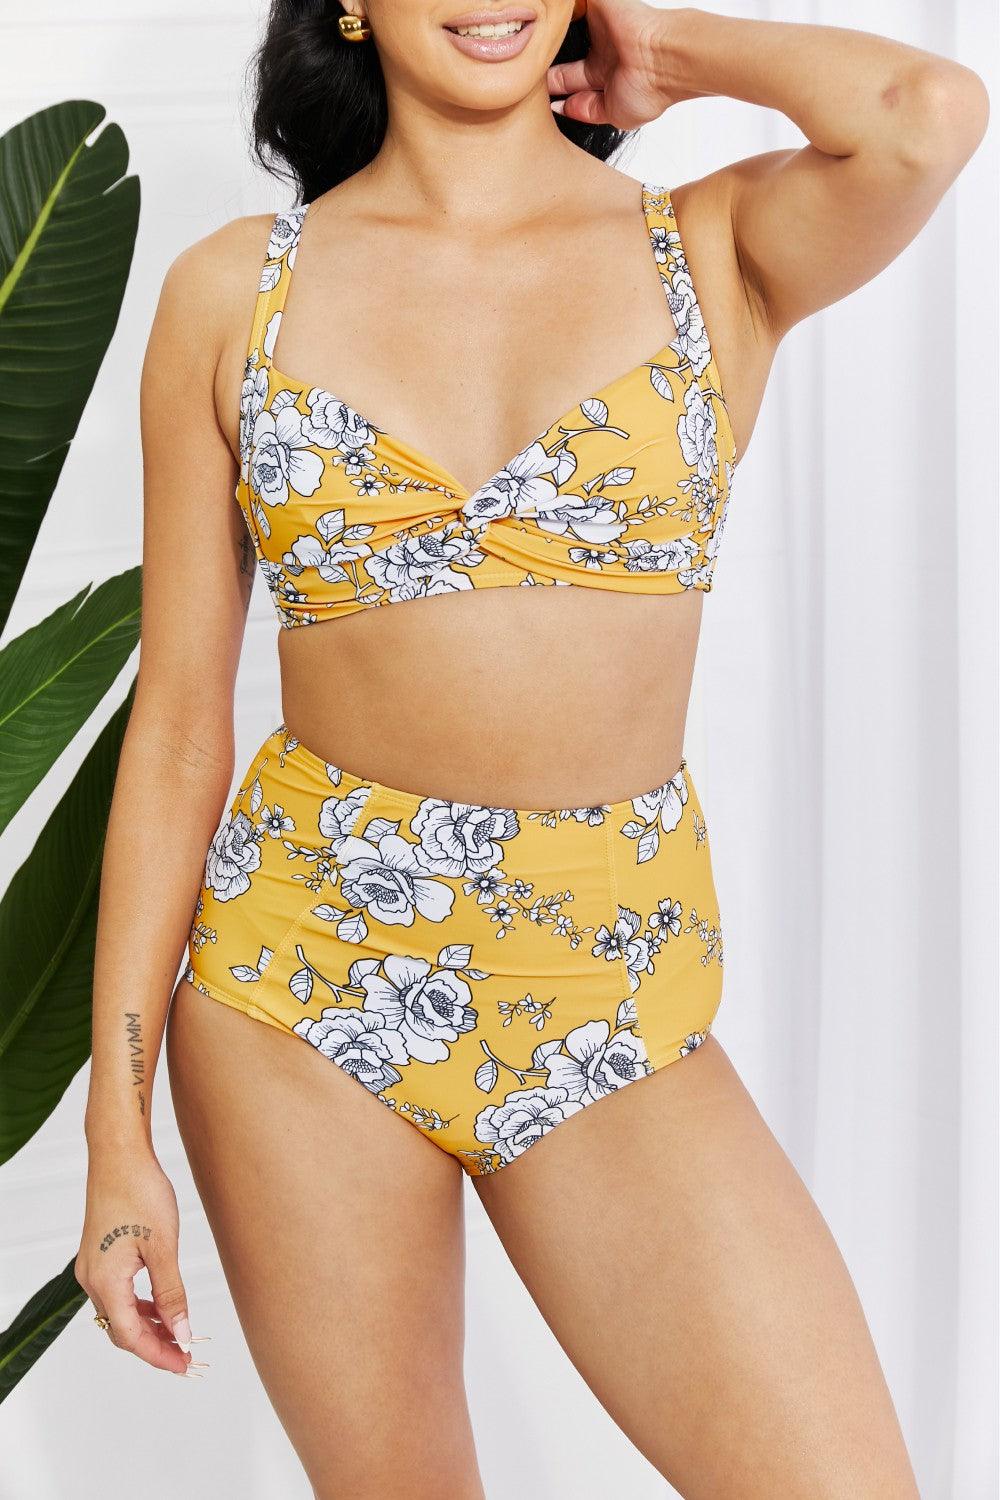 Marina West Swim Take A Dip Twist High-Rise Bikini in Mustard - Glamorous Boutique USA L.L.C.